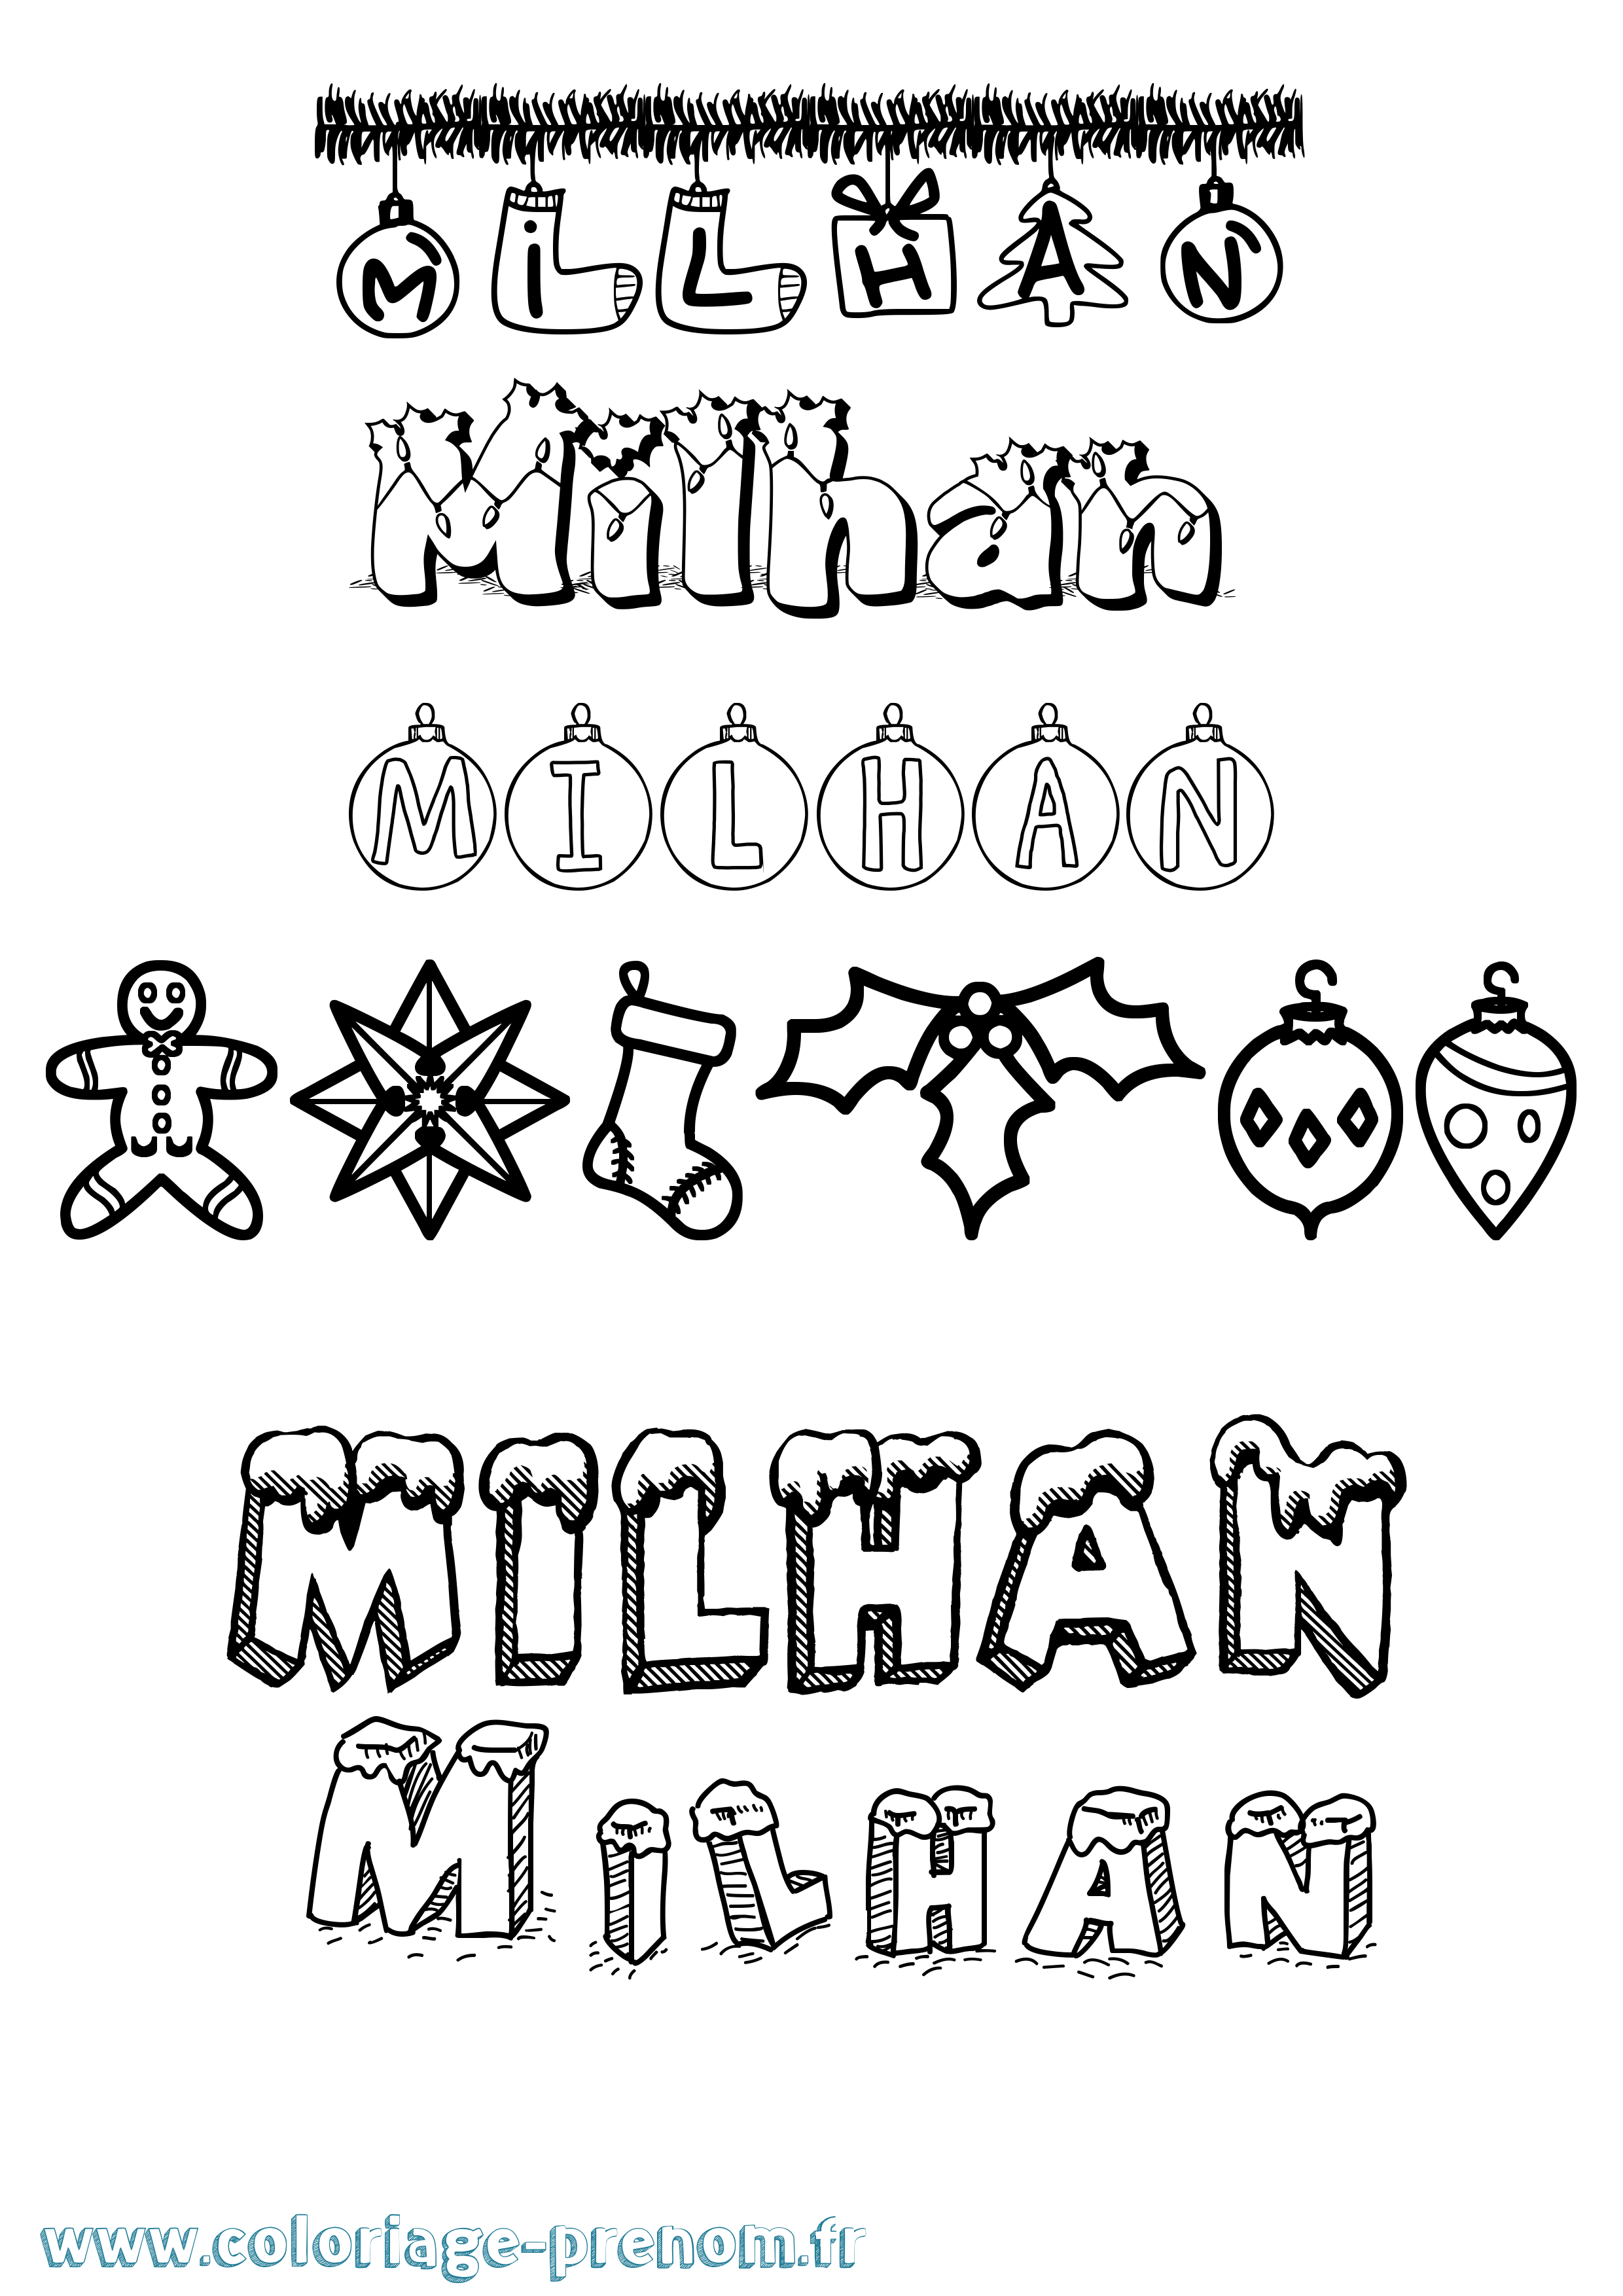 Coloriage prénom Milhan